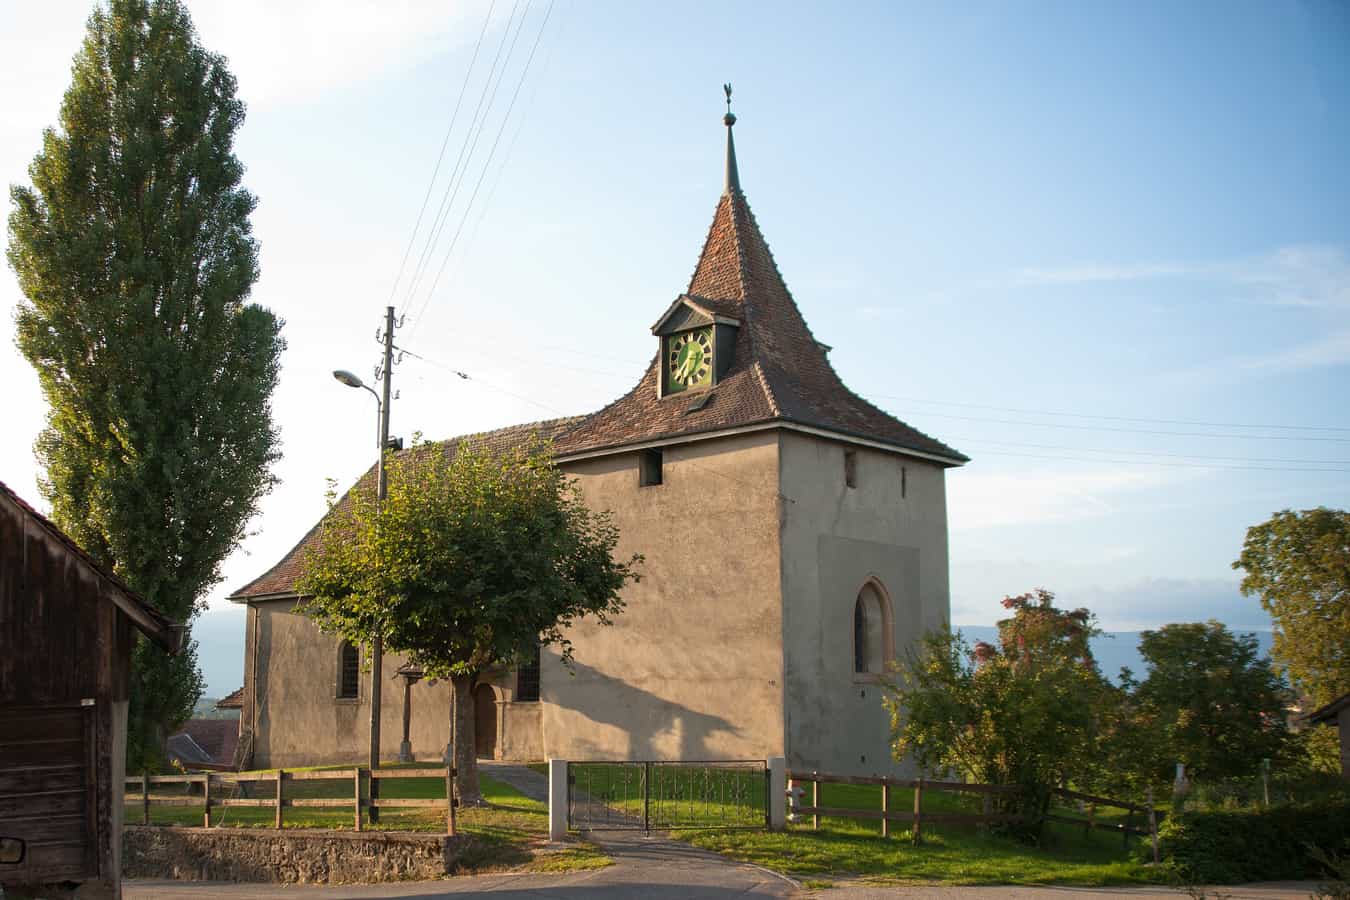 Kirche in Vuarrens, Kanton Waadt, Schweiz.